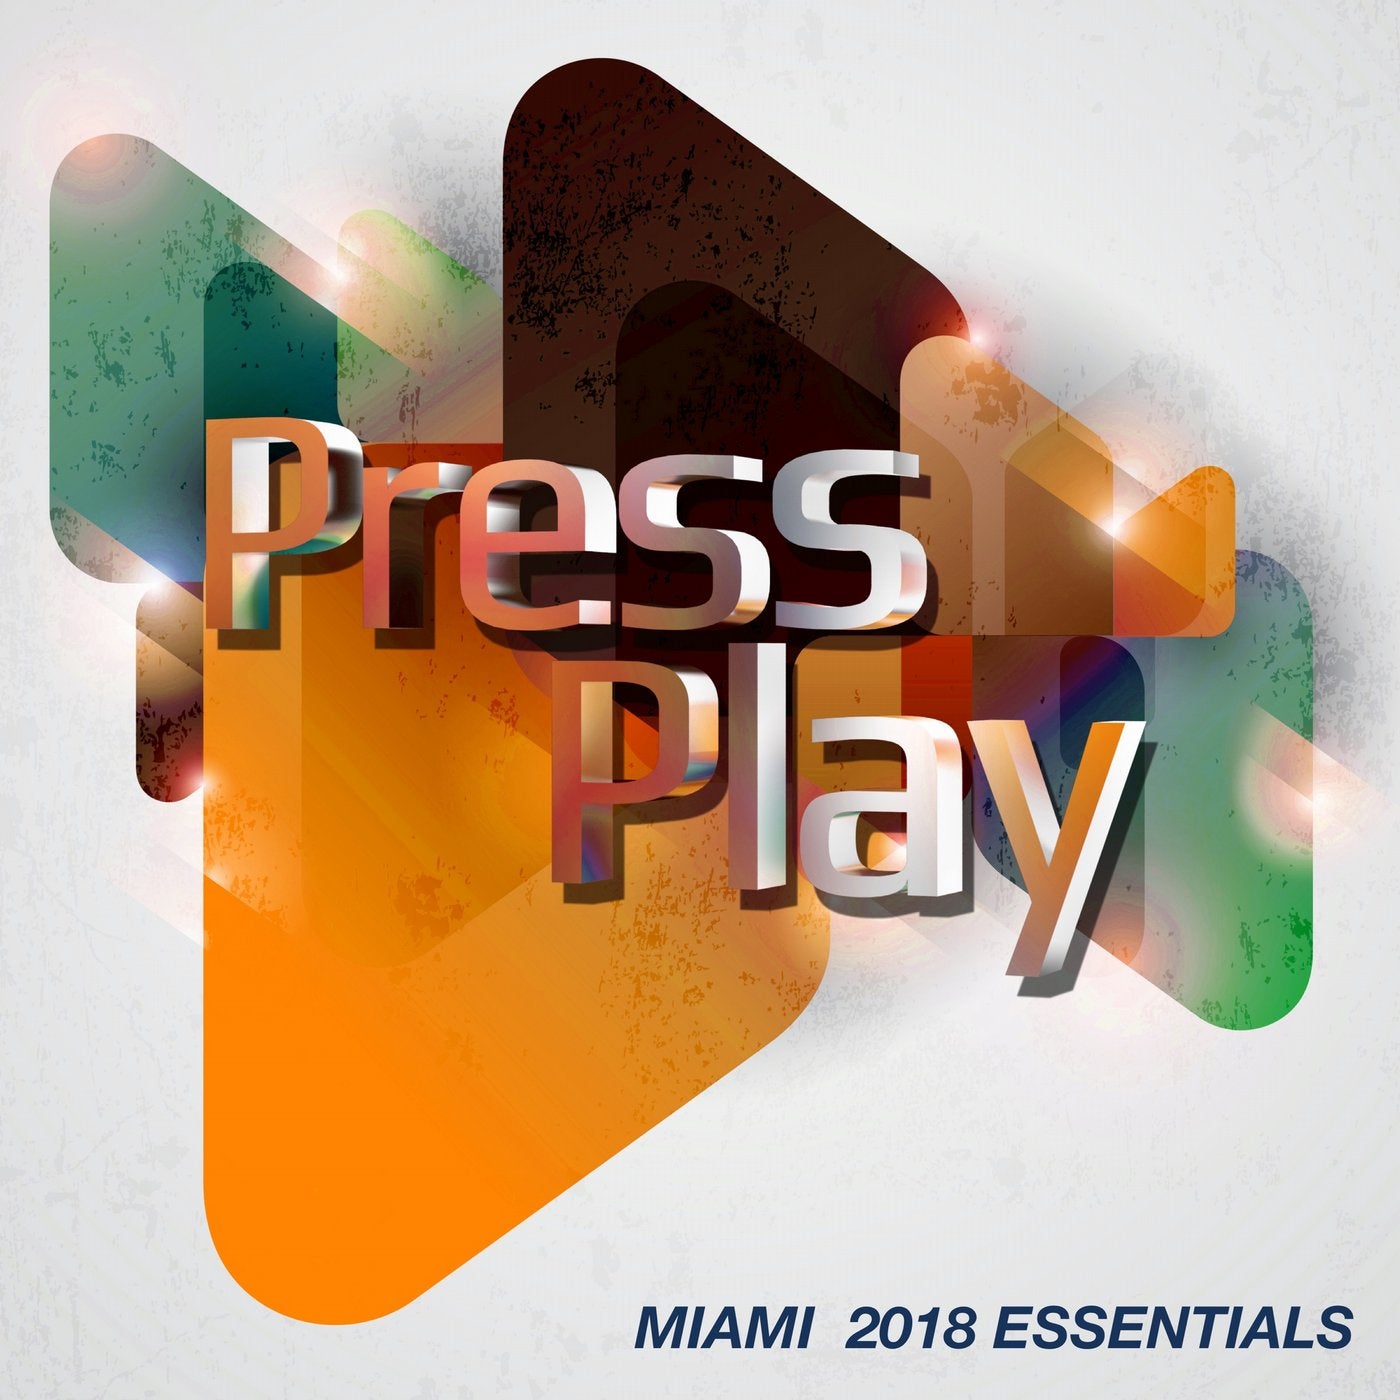 Miami 2018 Essentials